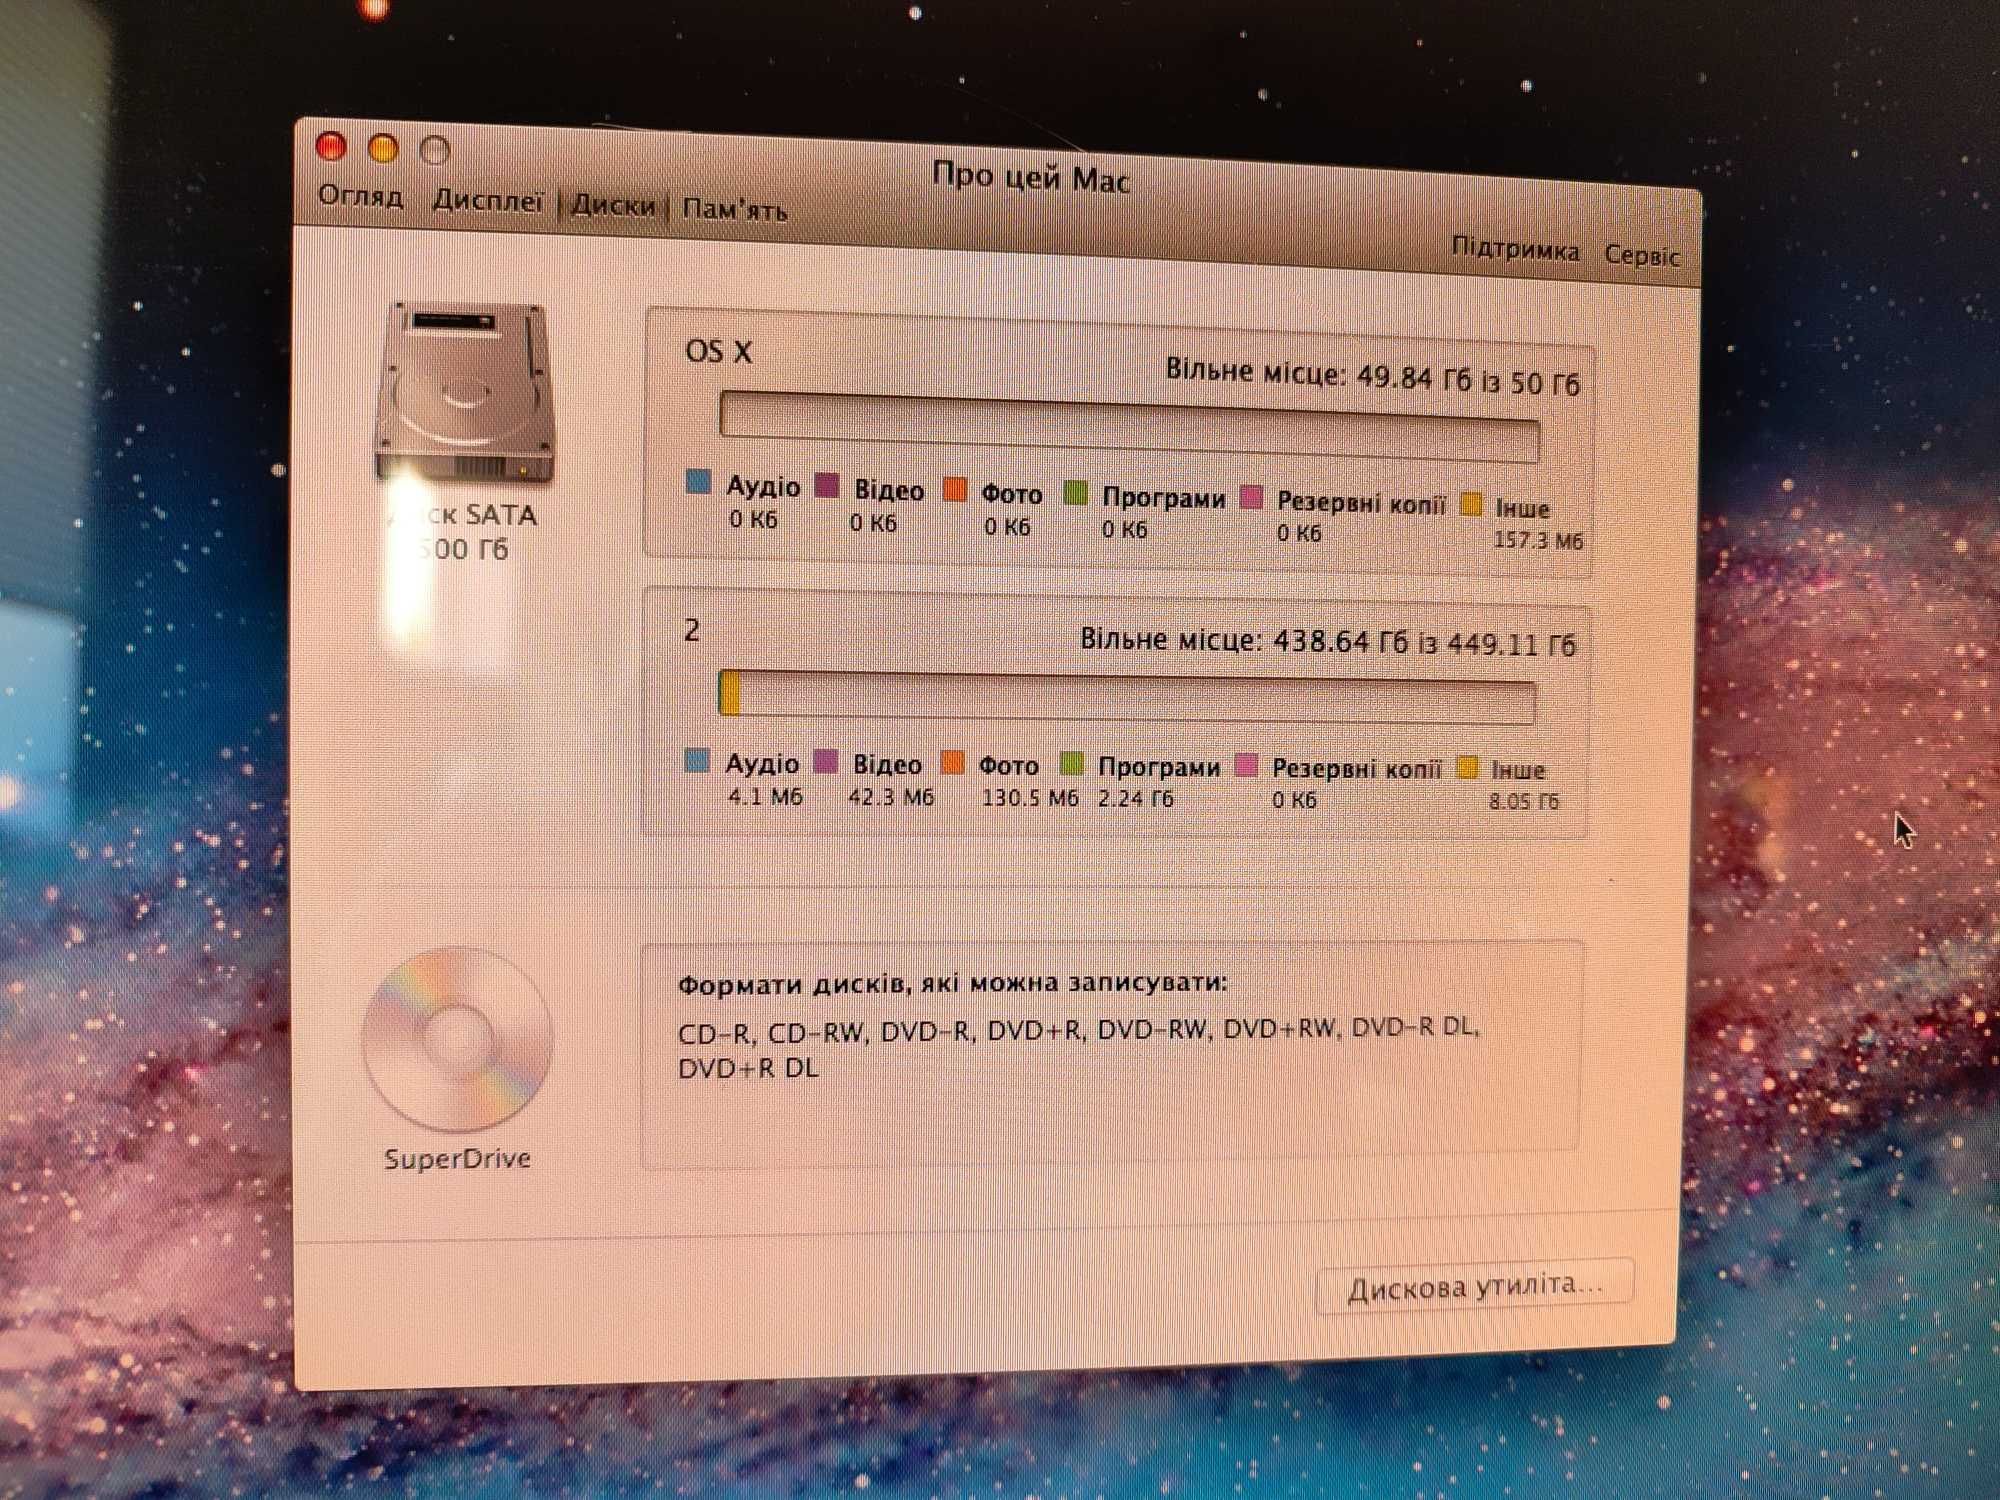 Моноблок Apple Mac OS